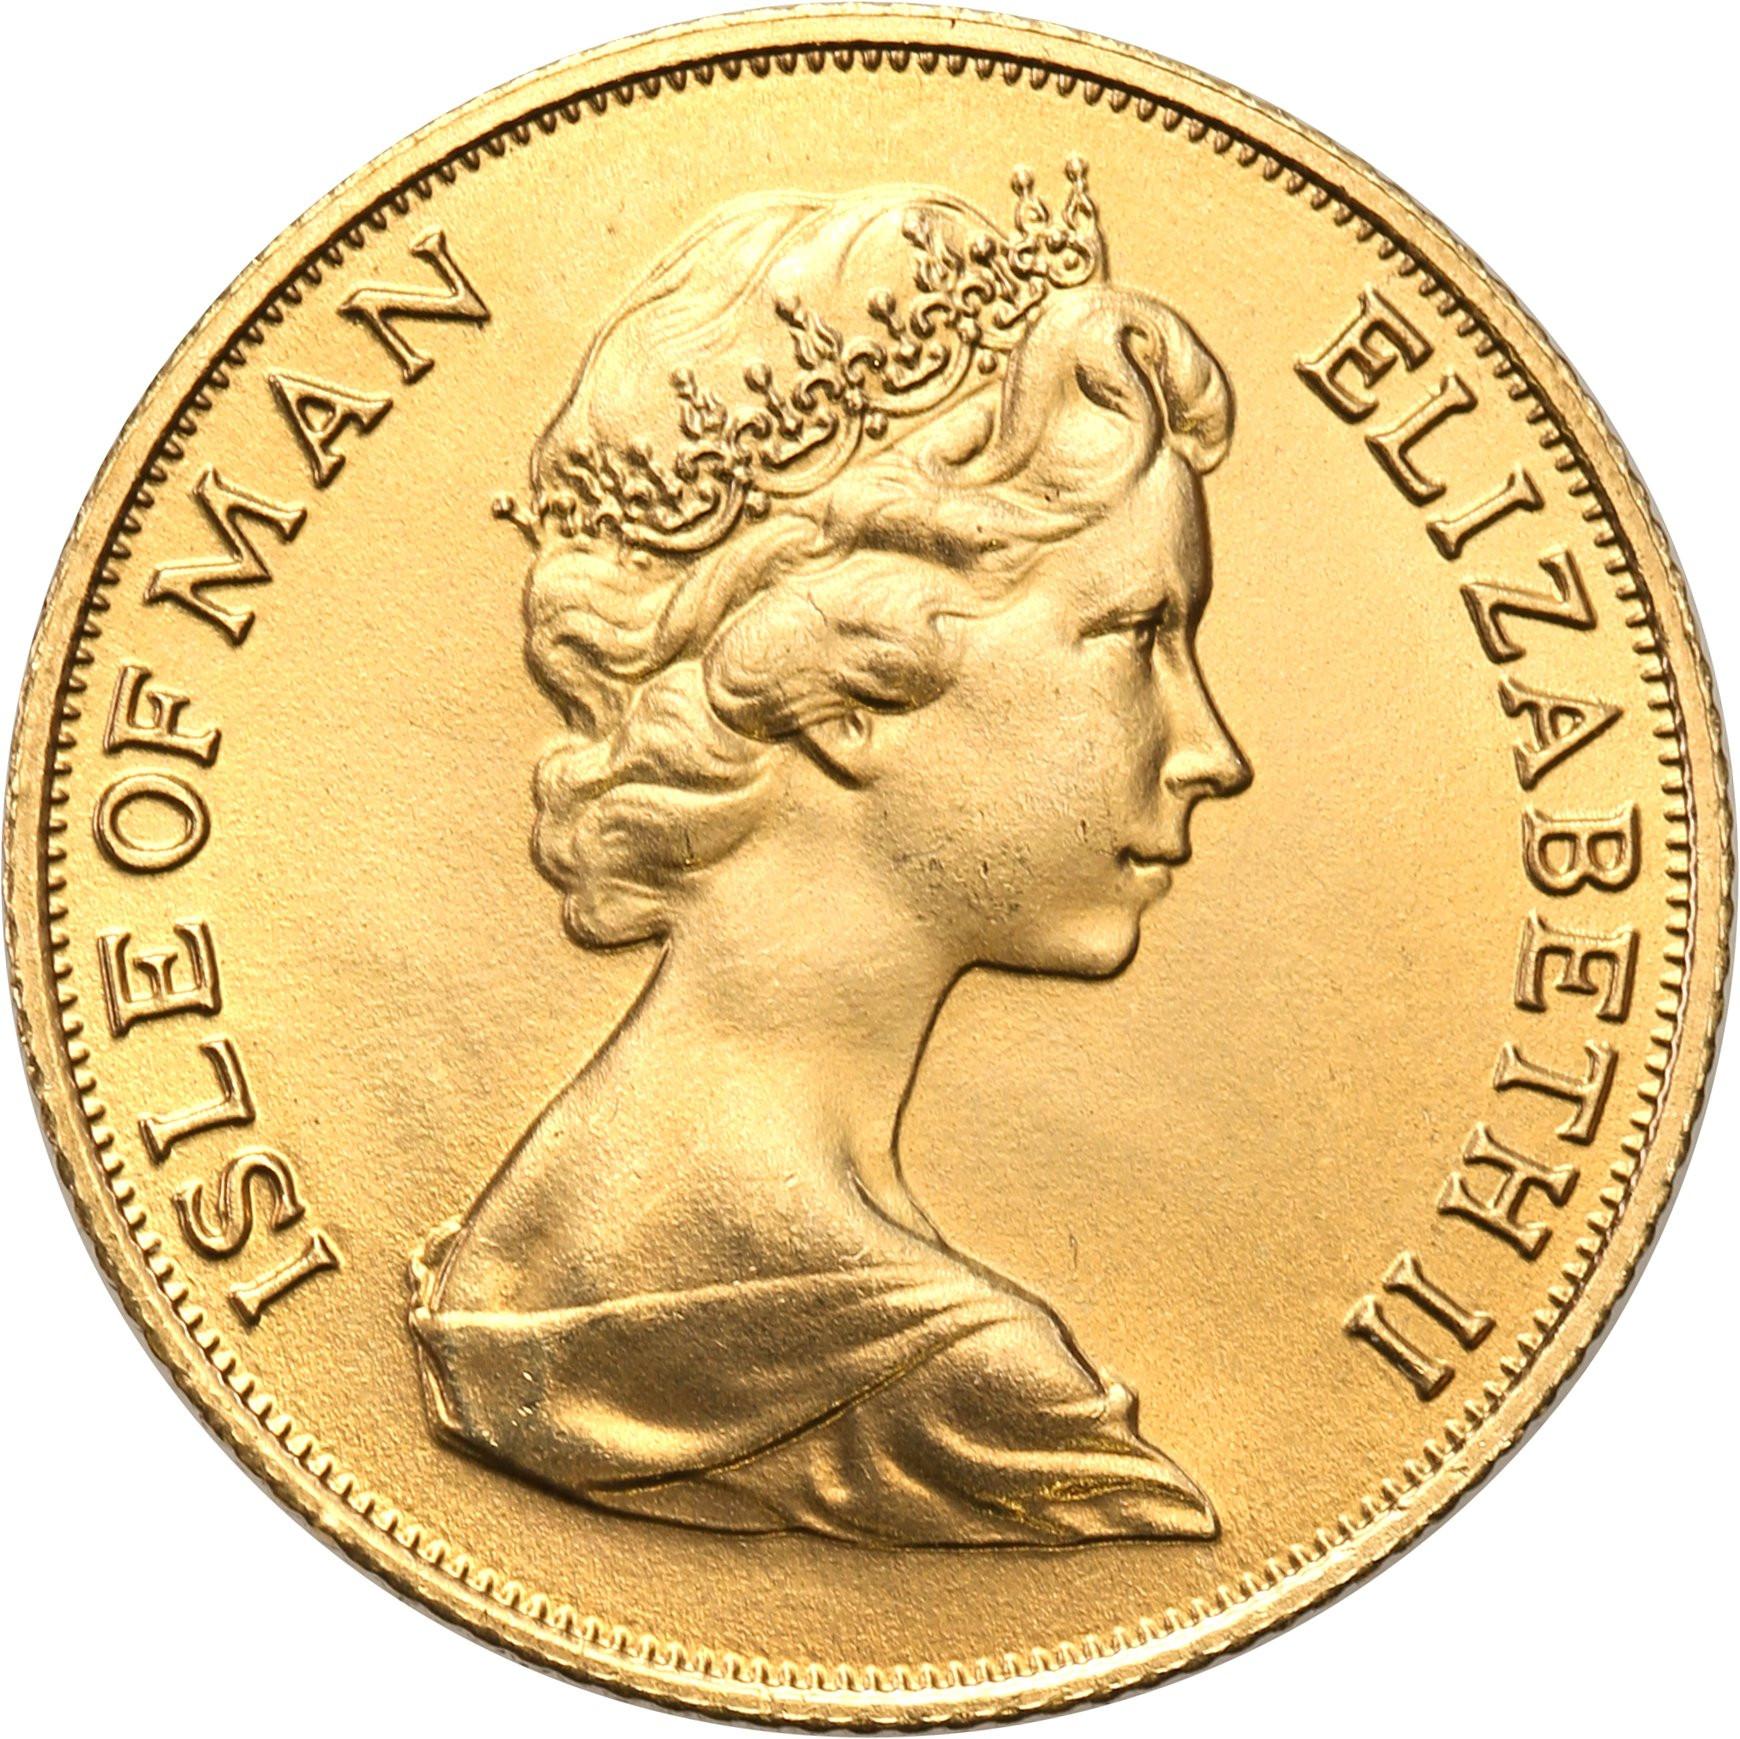 Isle of Man. Elżbieta II. 1 suweren (funt) 1973 – Złoto